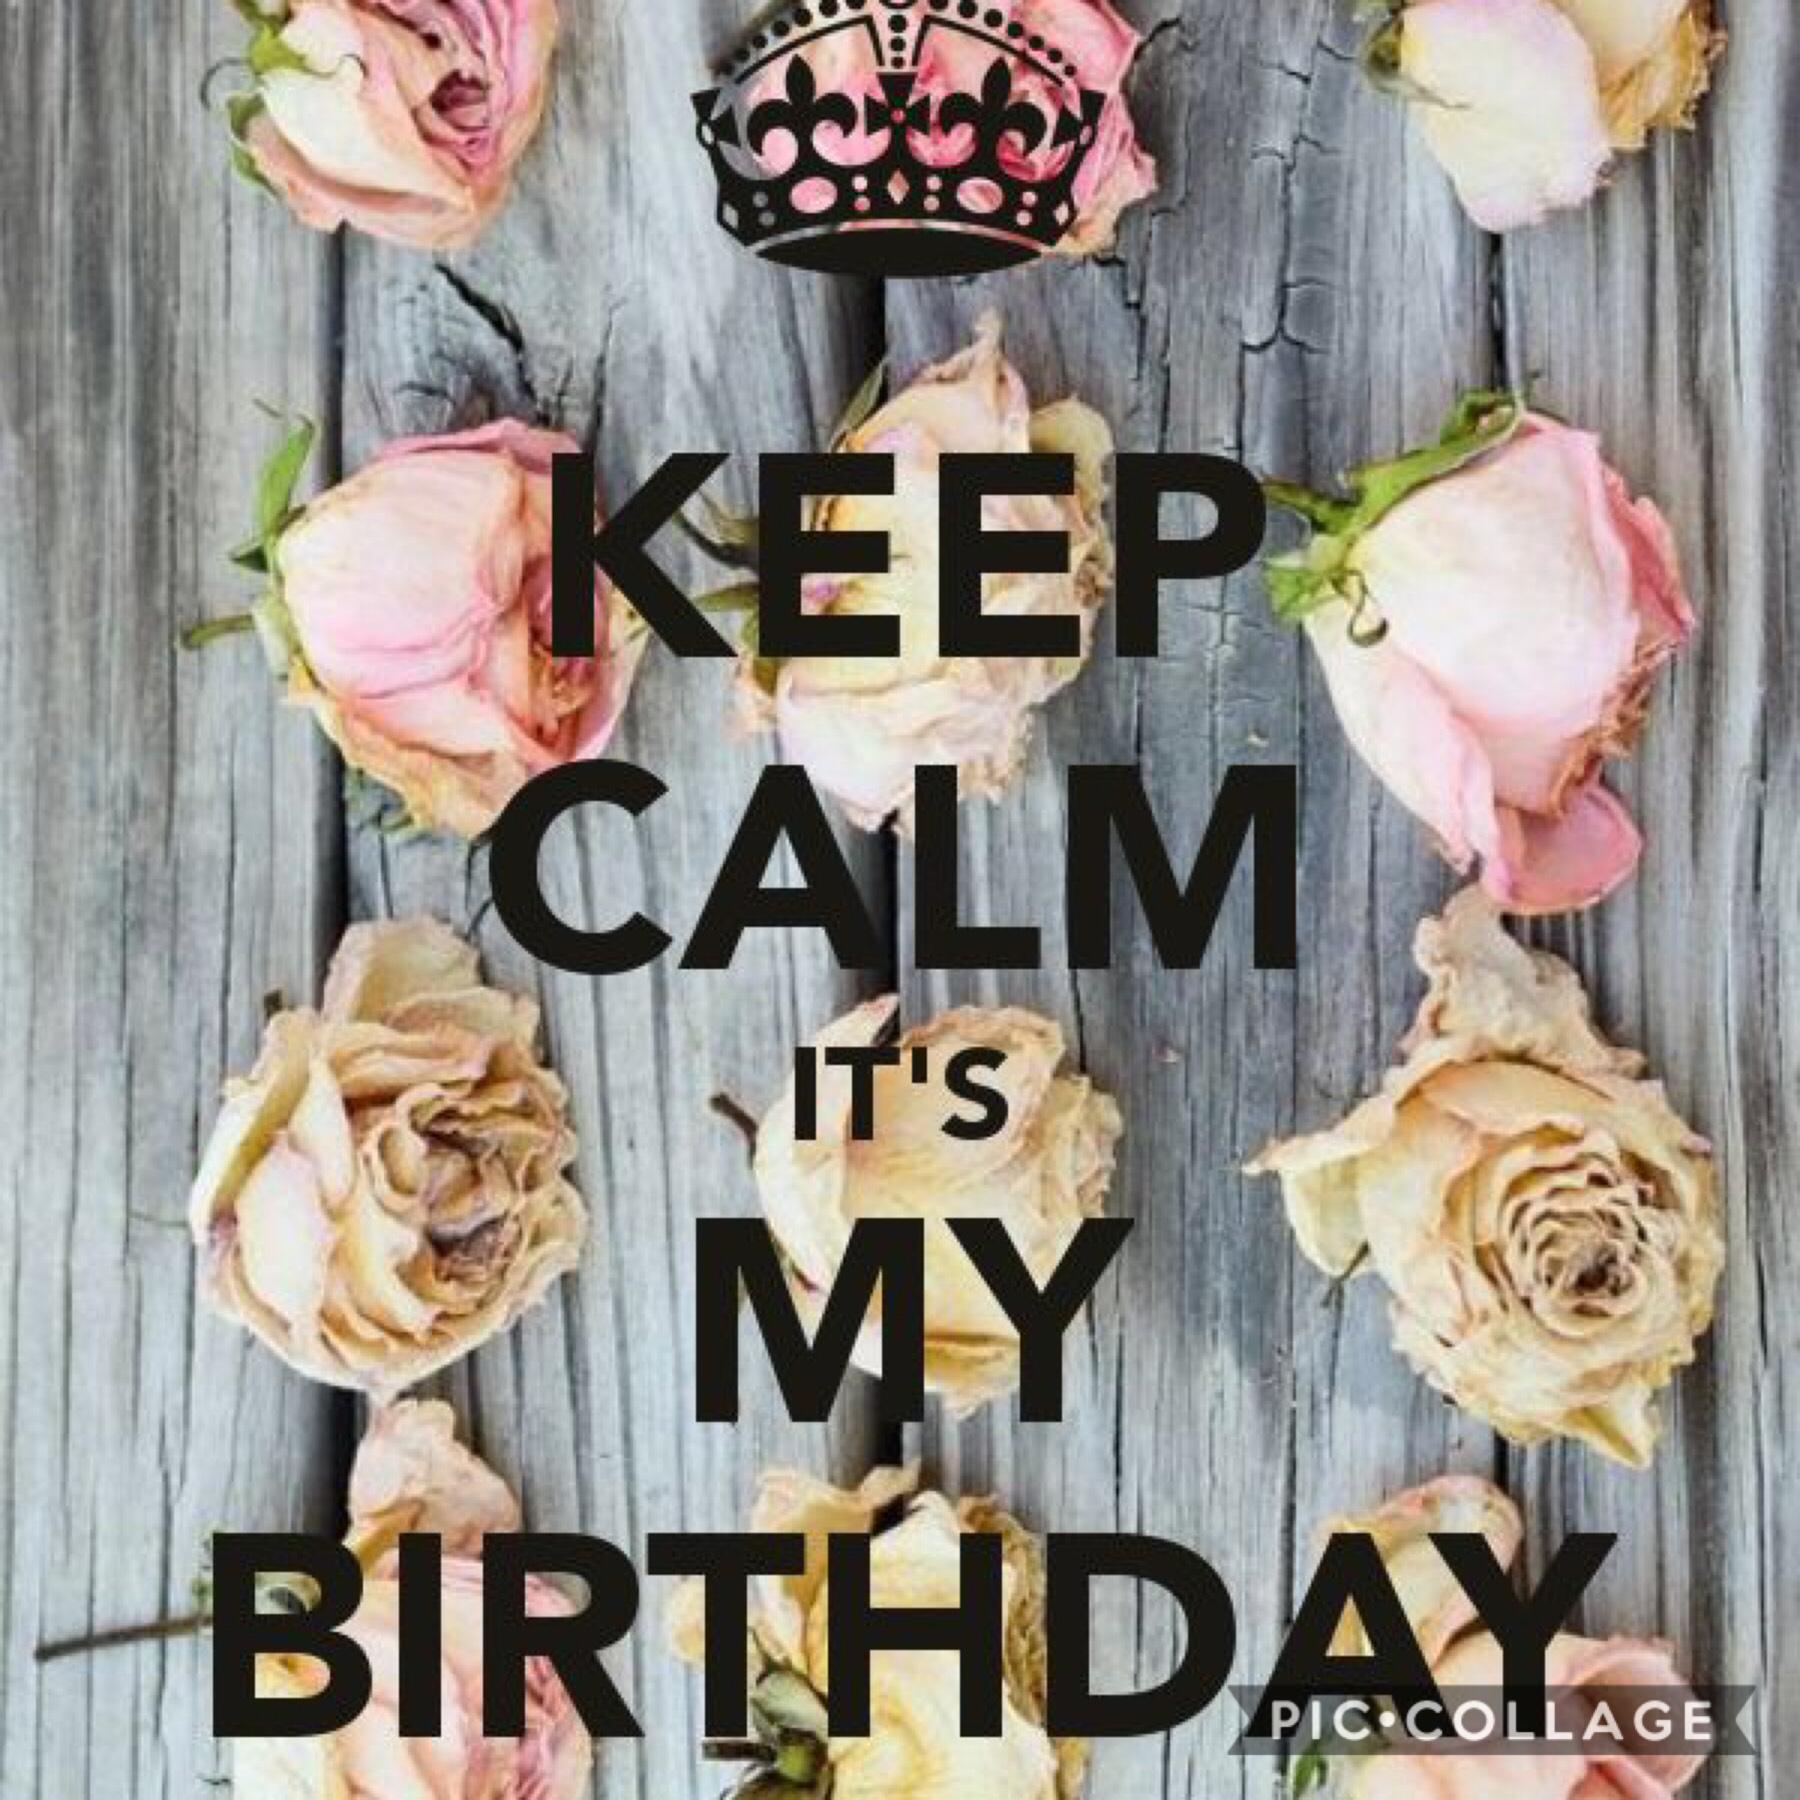 It’s my birthday 🎁 today